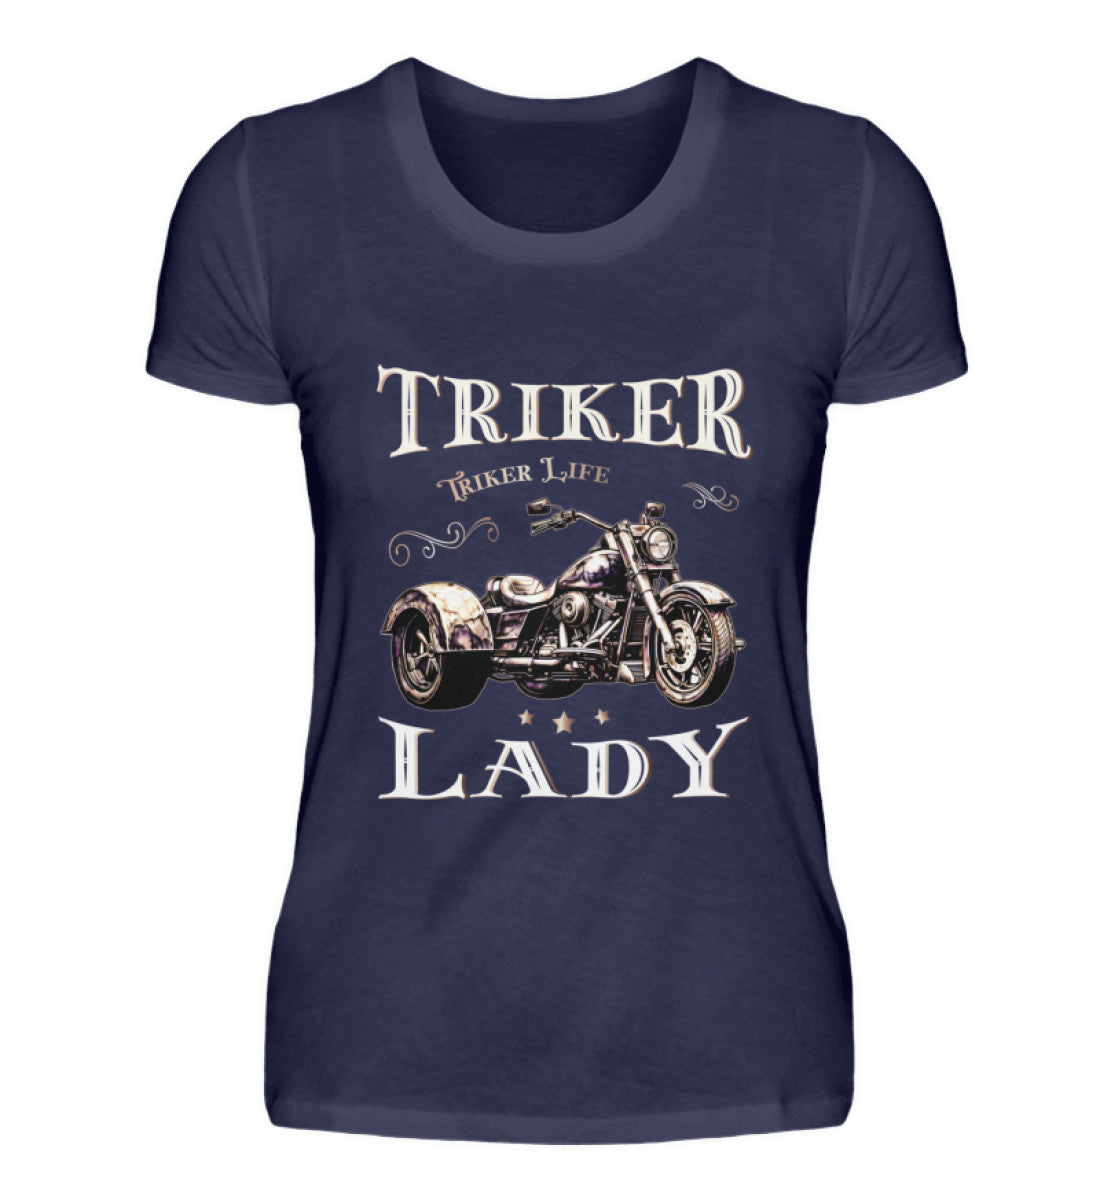 Ein T-Shirt für Trike Fahrerinnen von Wingbikers mit dem Aufdruck, Triker Lady - Triker Life, im vintage Stil, in navy blau.